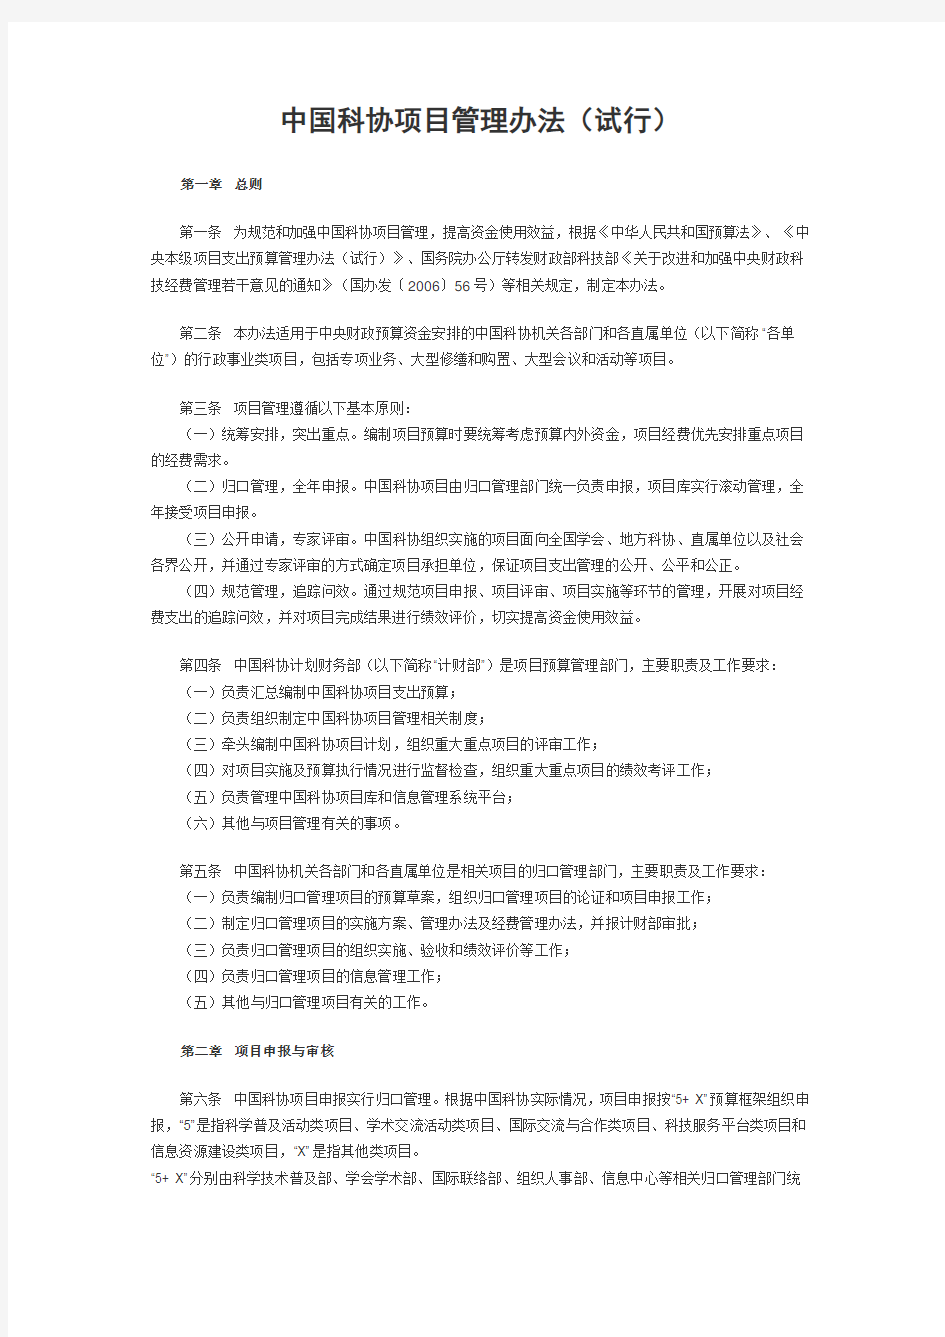 中国科协项目管理办法(试行)